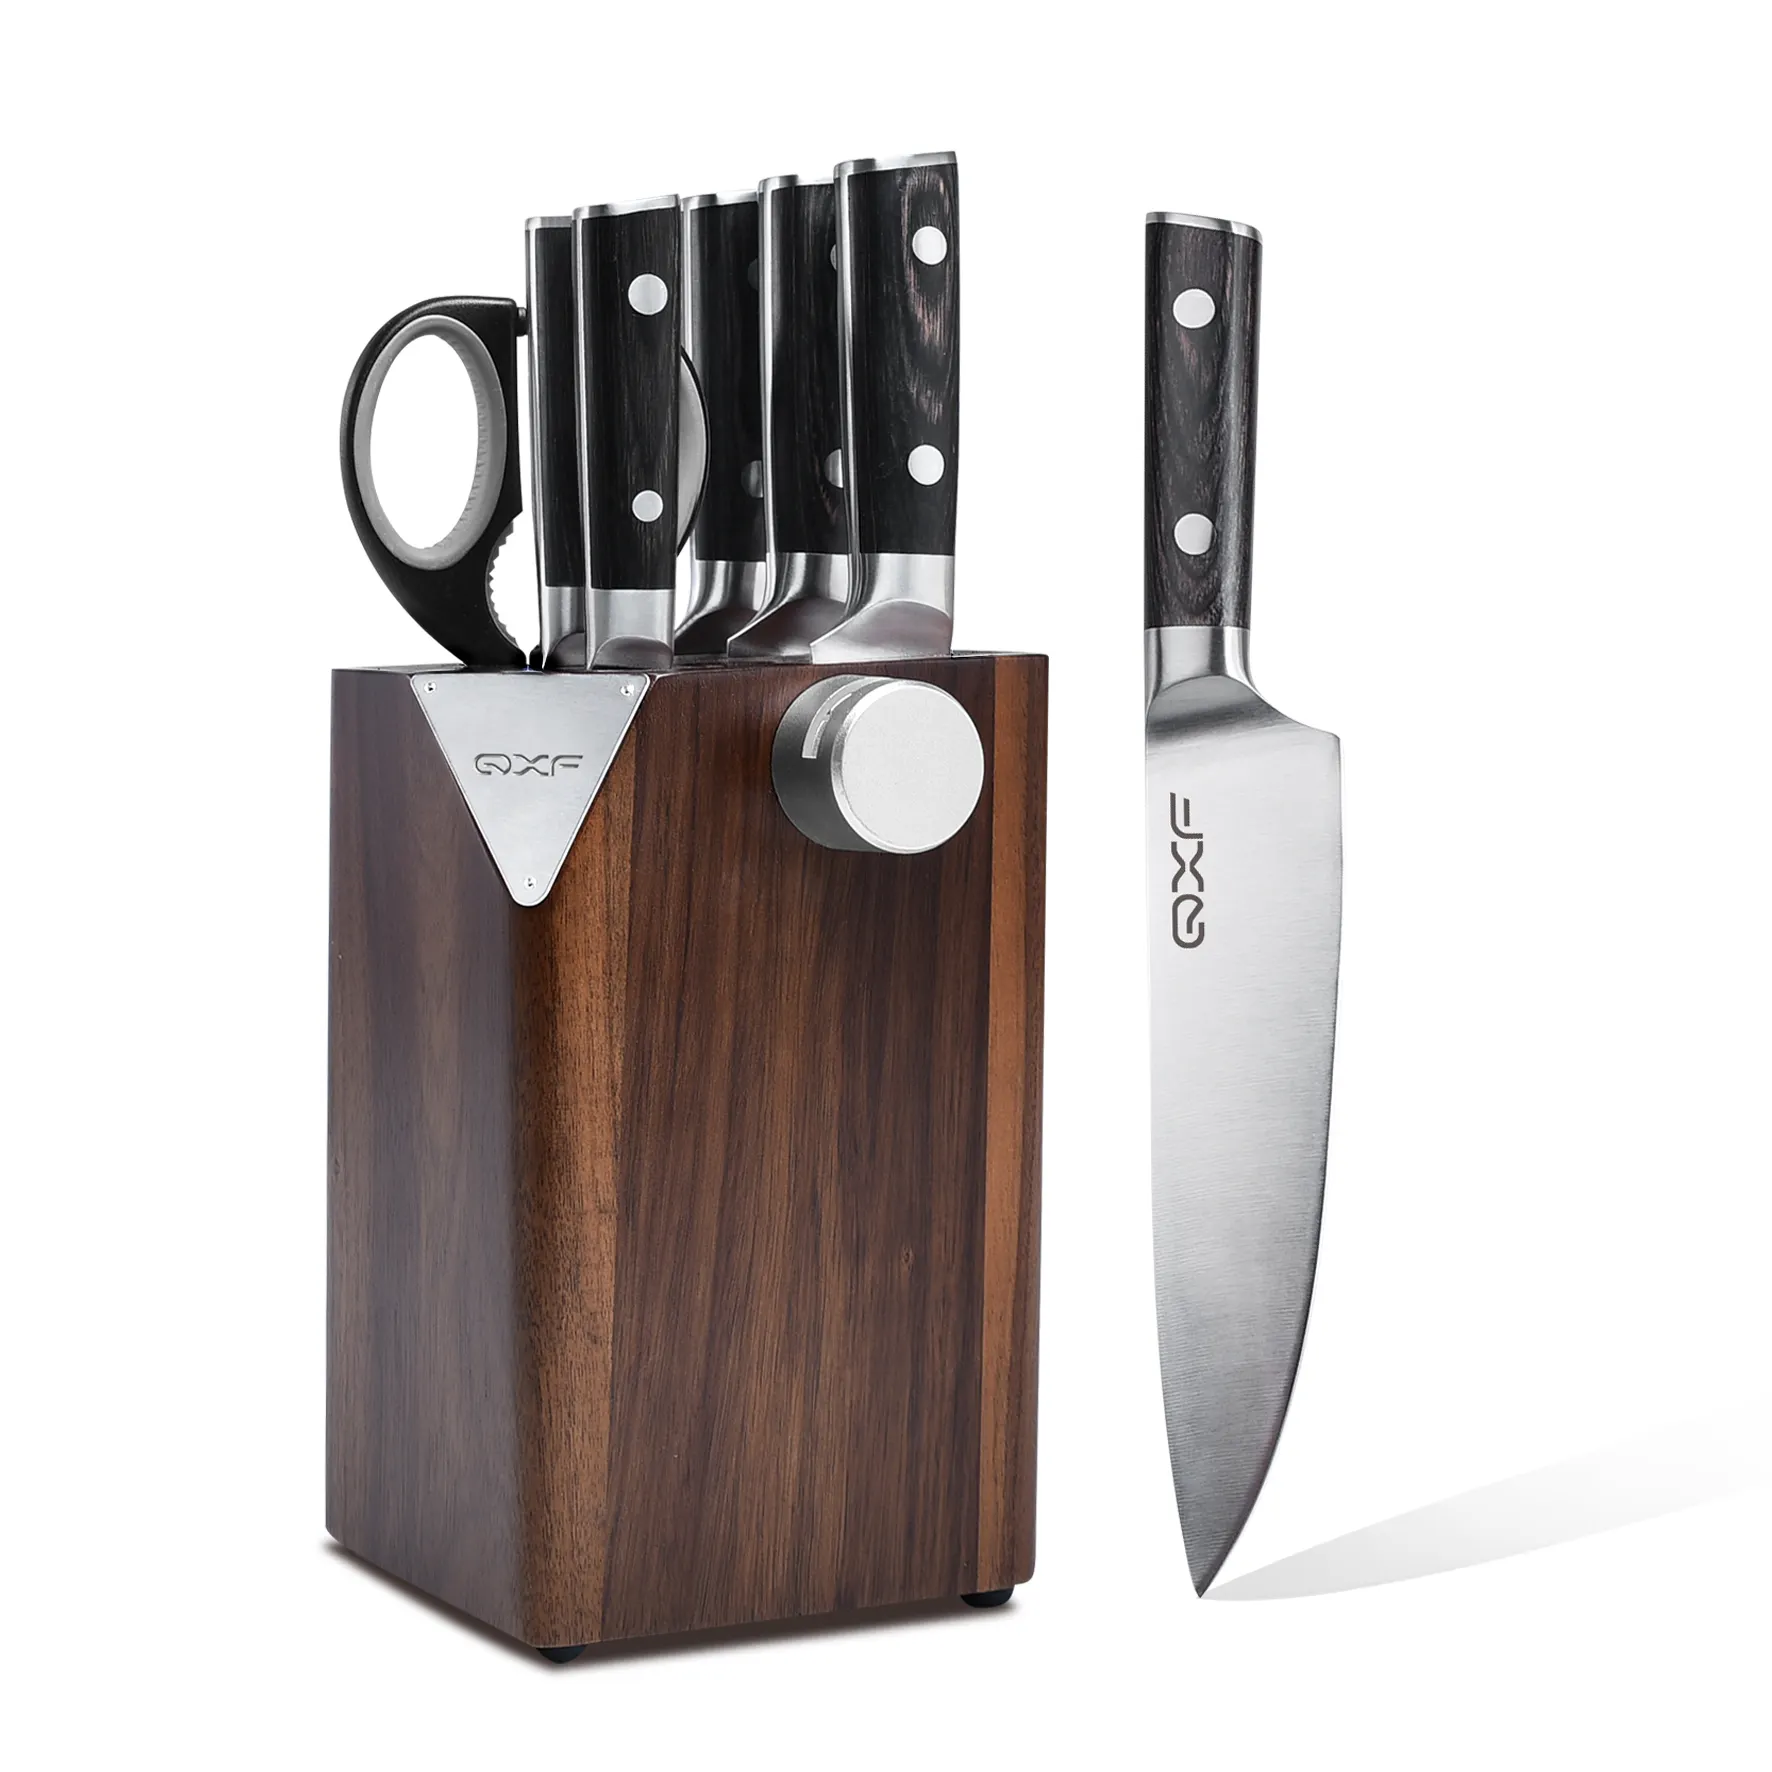 مجموعة سكاكين مطبخ متطورة مكونة من 7 قطع مصنوعة من الفولاذ المقاوم للصدأ وتحمل قالب سكاكين